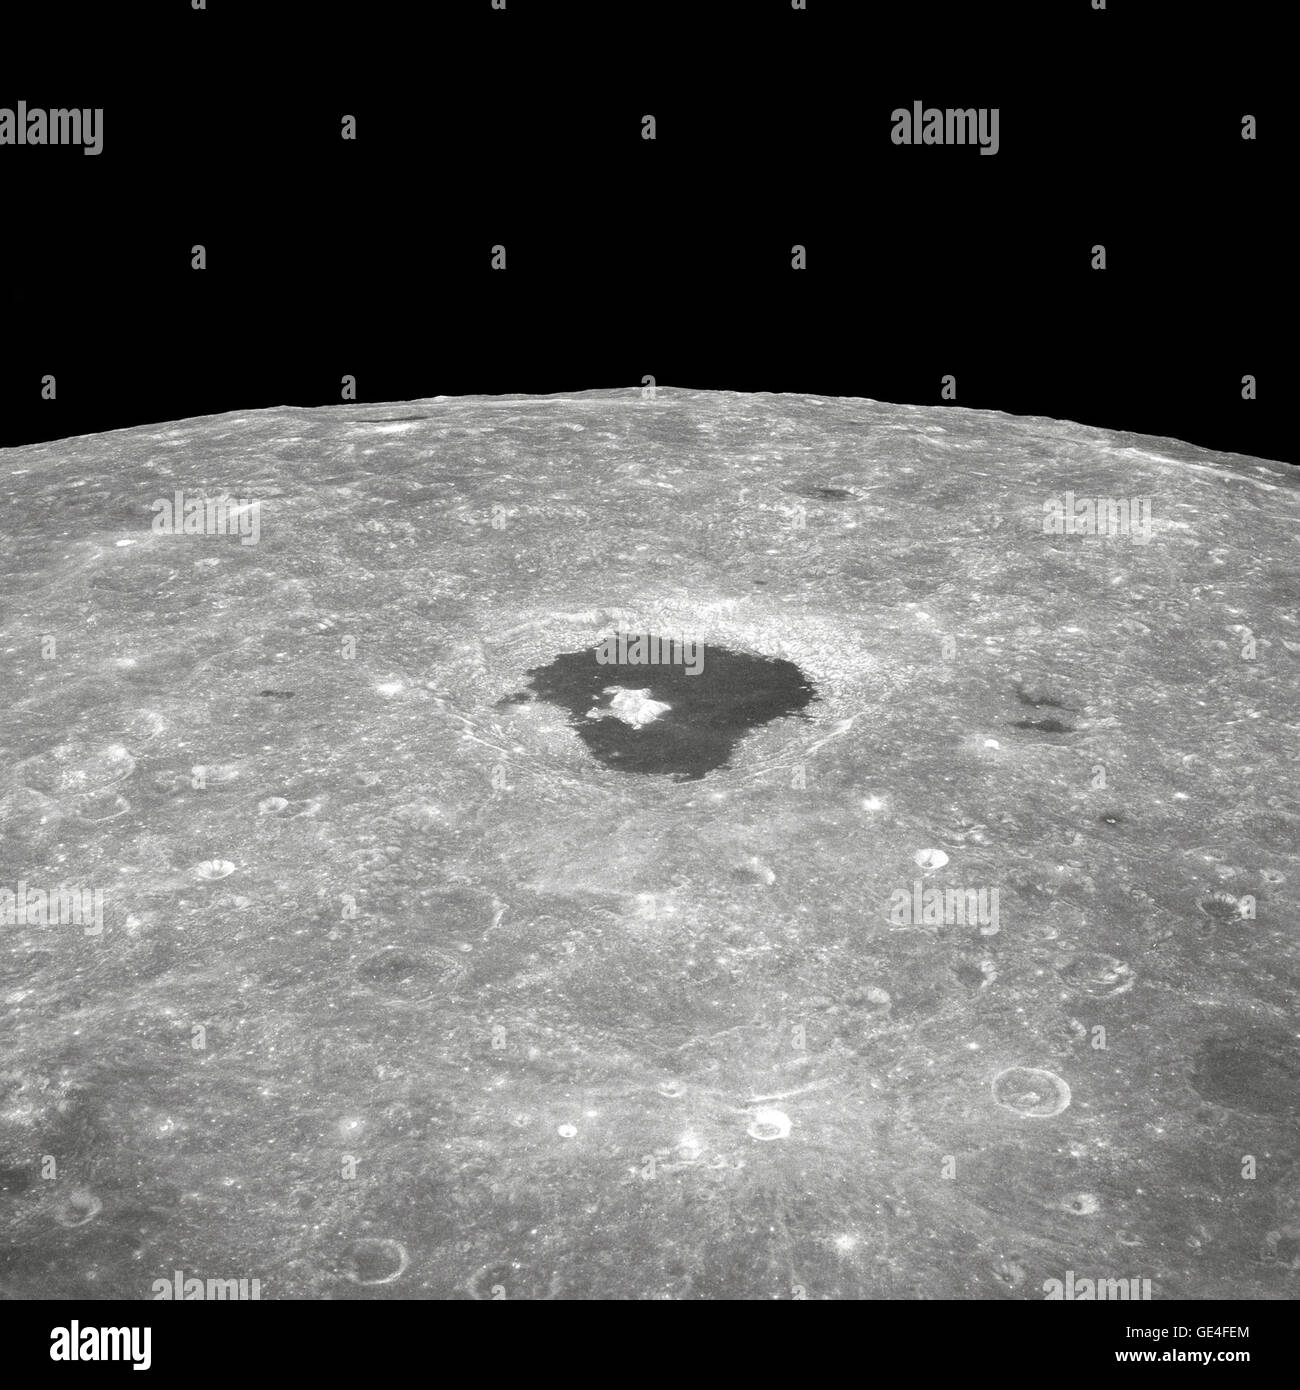 (24 dicembre 1968) Questa è una vista del grande cratere Tsiolkovsky come fotografato dagli astronauti durante l' Apollo 8 orbita lunare missione, guardando ad Est verso l'orizzonte lunare. Tsiolkovsky è di circa 150 statuto miglia di diametro. Esso è stato identificato per la prima volta e nominato dai russi da fotografie scattate da loro unmanned Luna III veicolo spaziale Immagine # : Come8-12-2196 Foto Stock